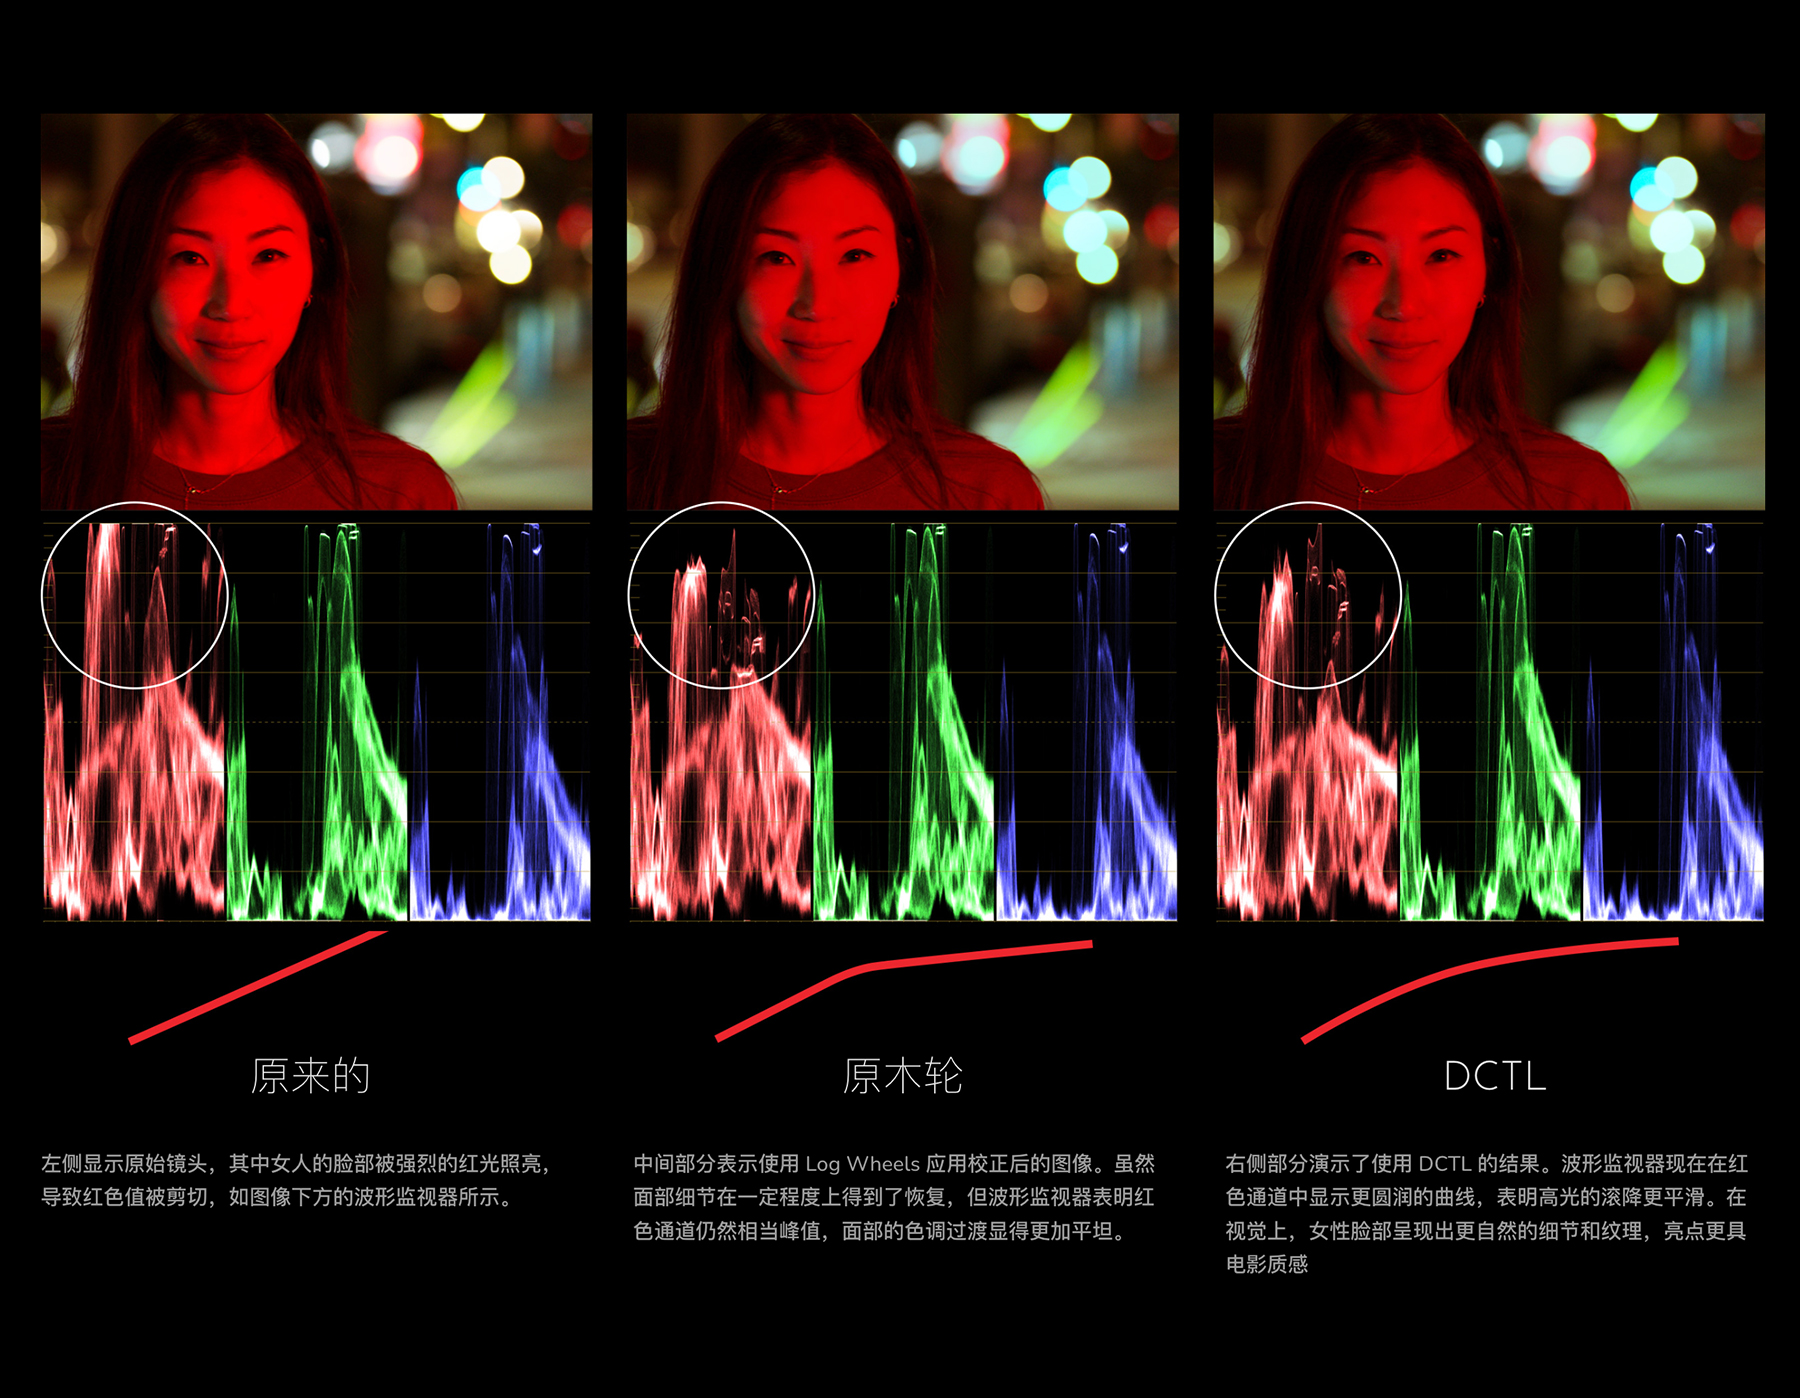 MonoNodes – RGB SPLIT TONE DCTLS 达芬奇高光和阴影色调分离DCTL电影胶片模拟单节点调色插件 DaVinci Resolve DCTLS 插件预设 第5张